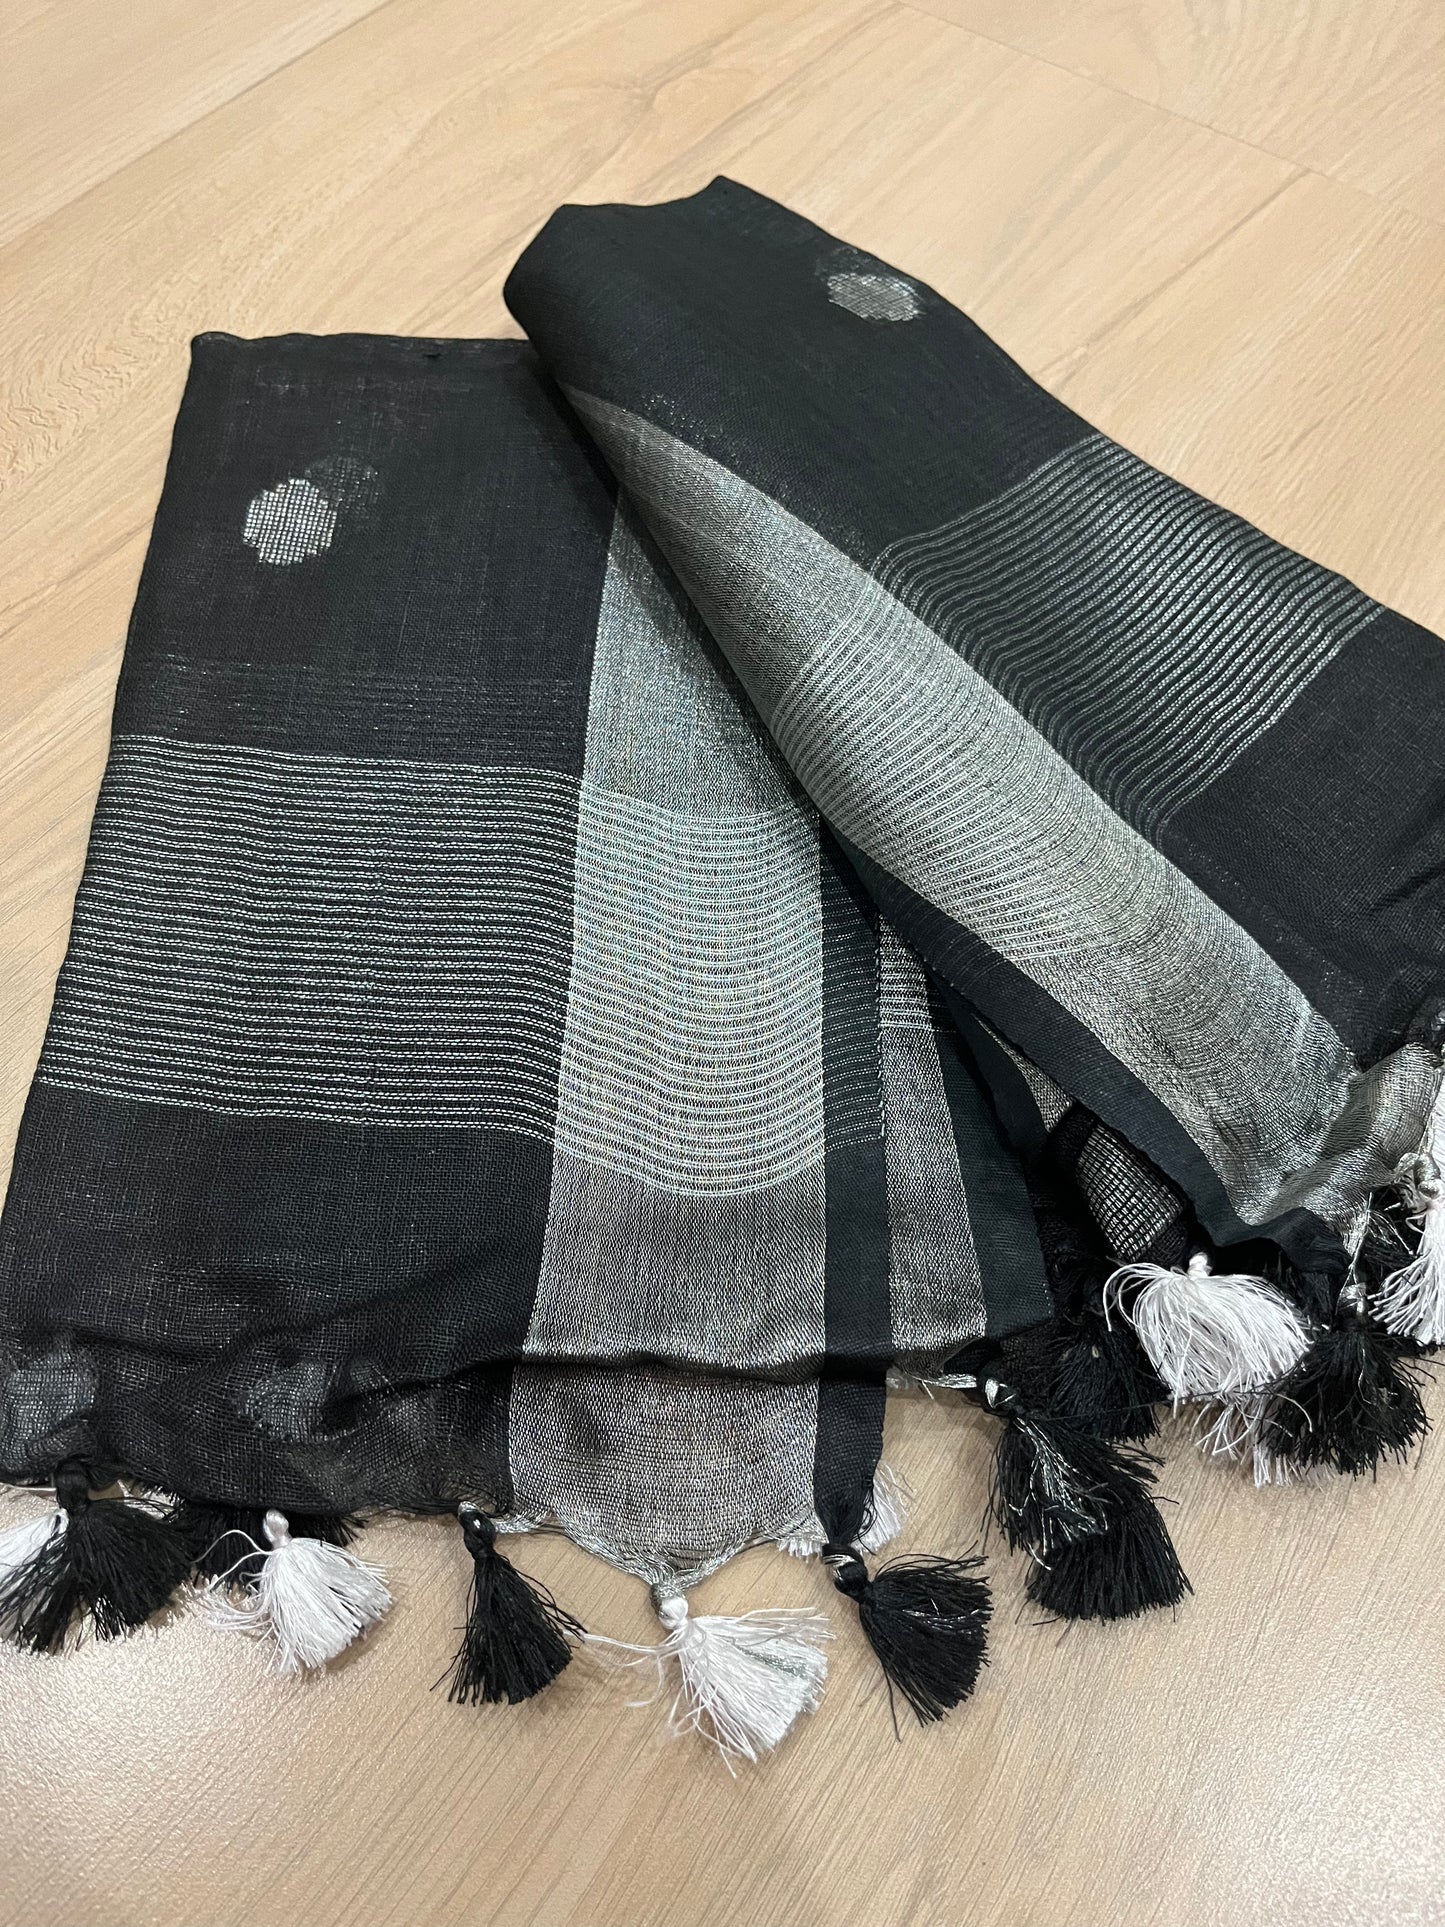 LINEN DUPATTA: Black Linen Dupatta with zari motif & silver zari border with Tassels | KIHUMS Dupatta